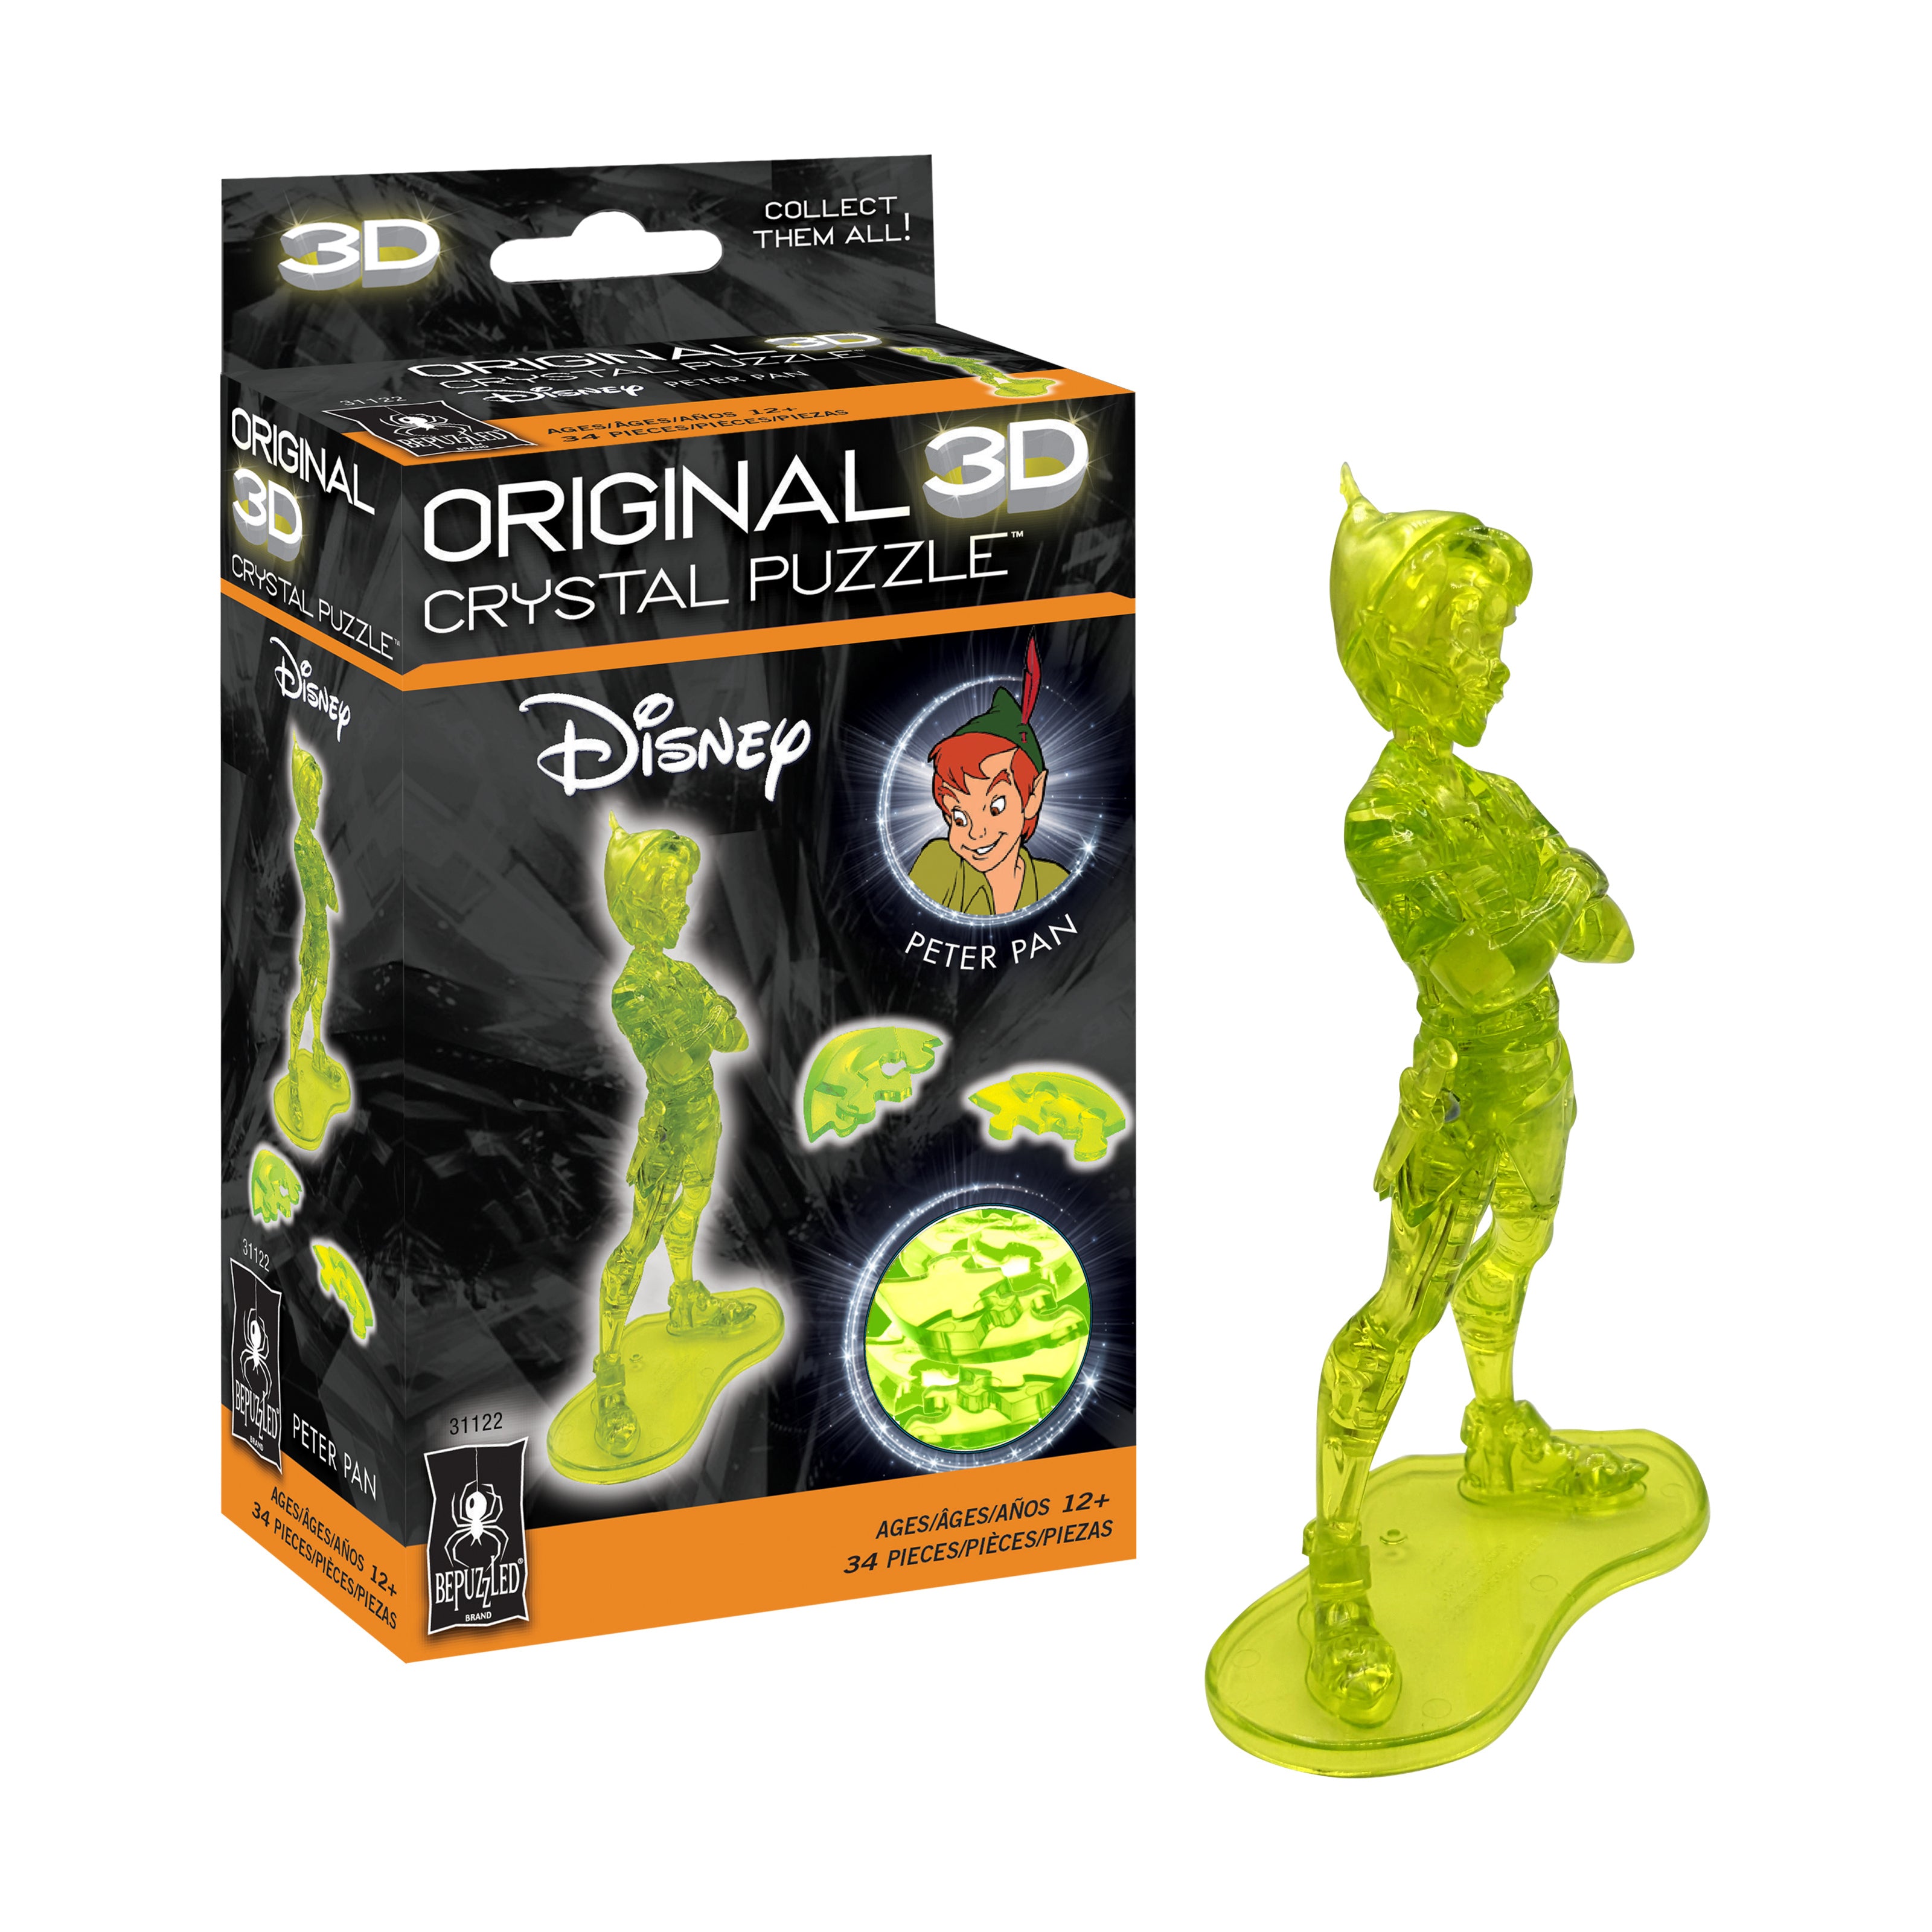 3D Crystal Puzzle - Disney Peter Pan (Green): 34 Pcs